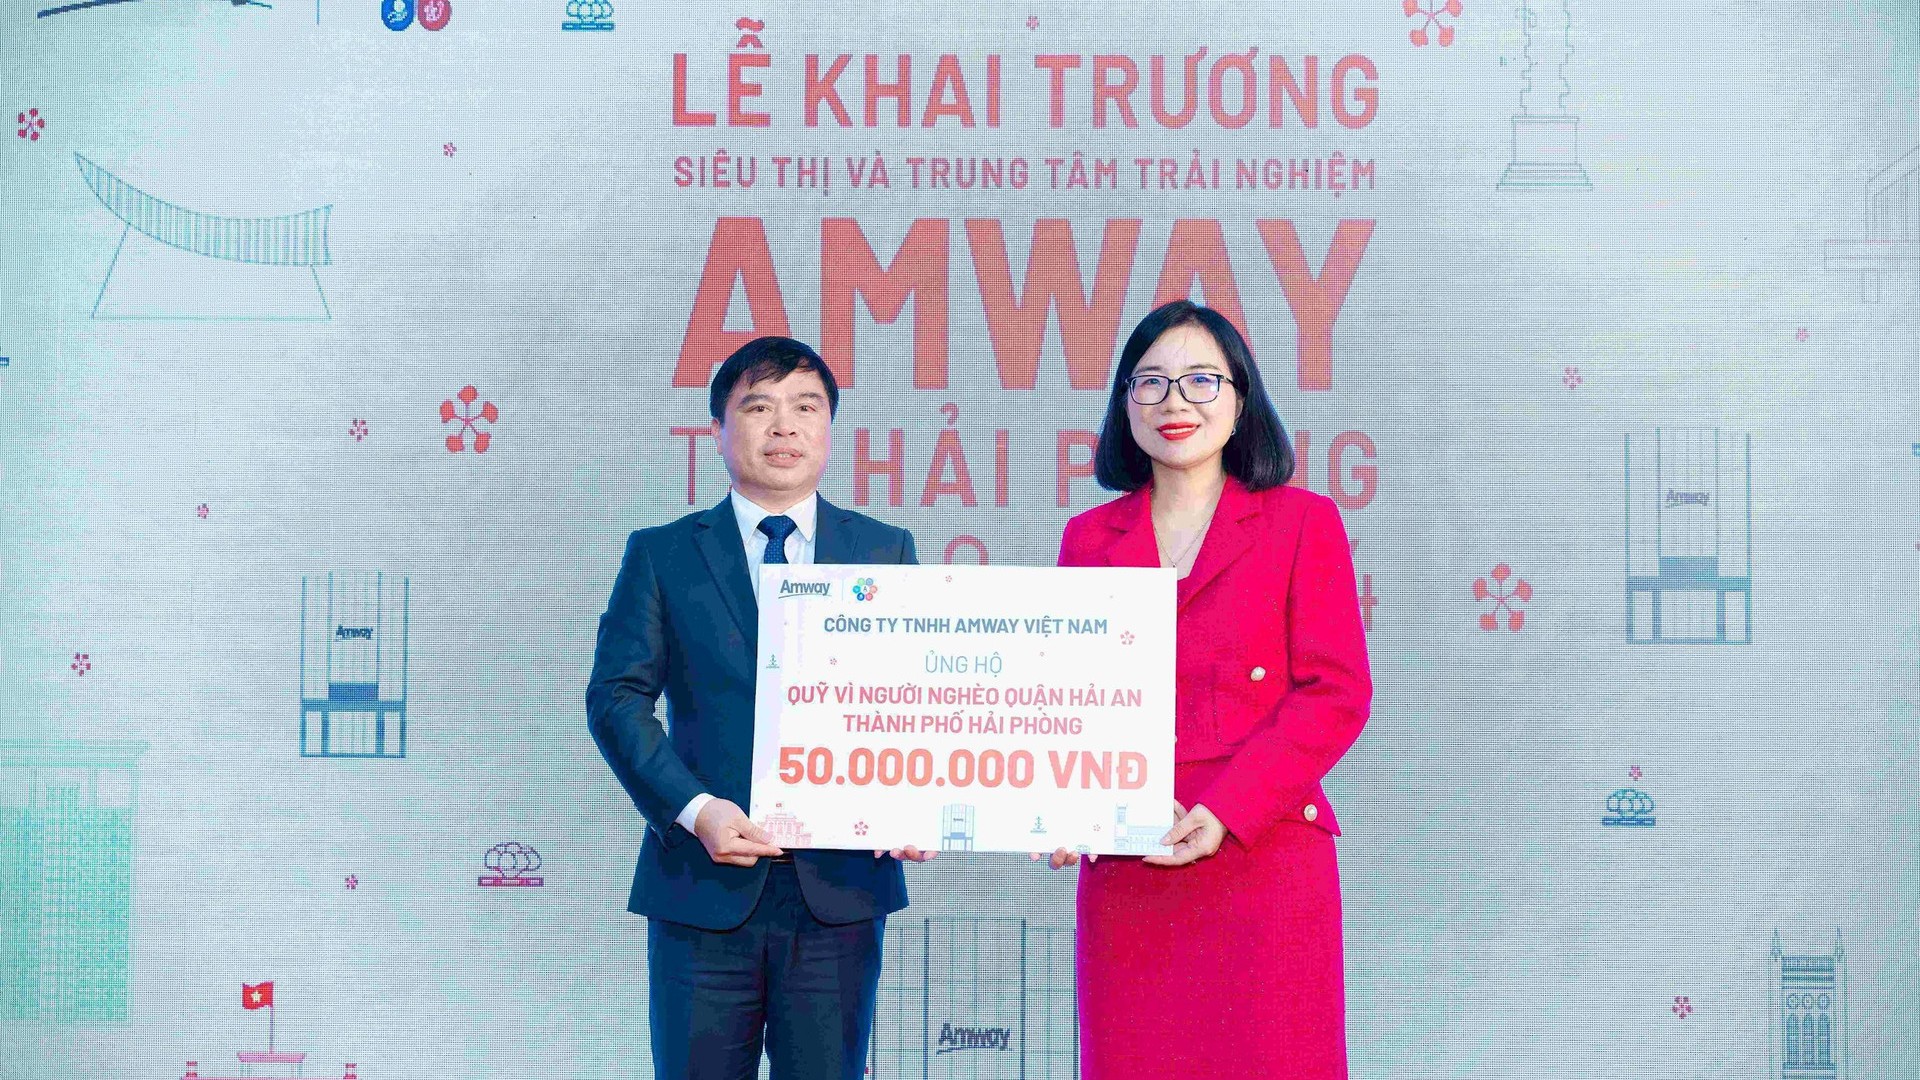 Amway Việt Nam khai trương chuỗi siêu thị và trung tâm trải nghiệm đầu năm mới